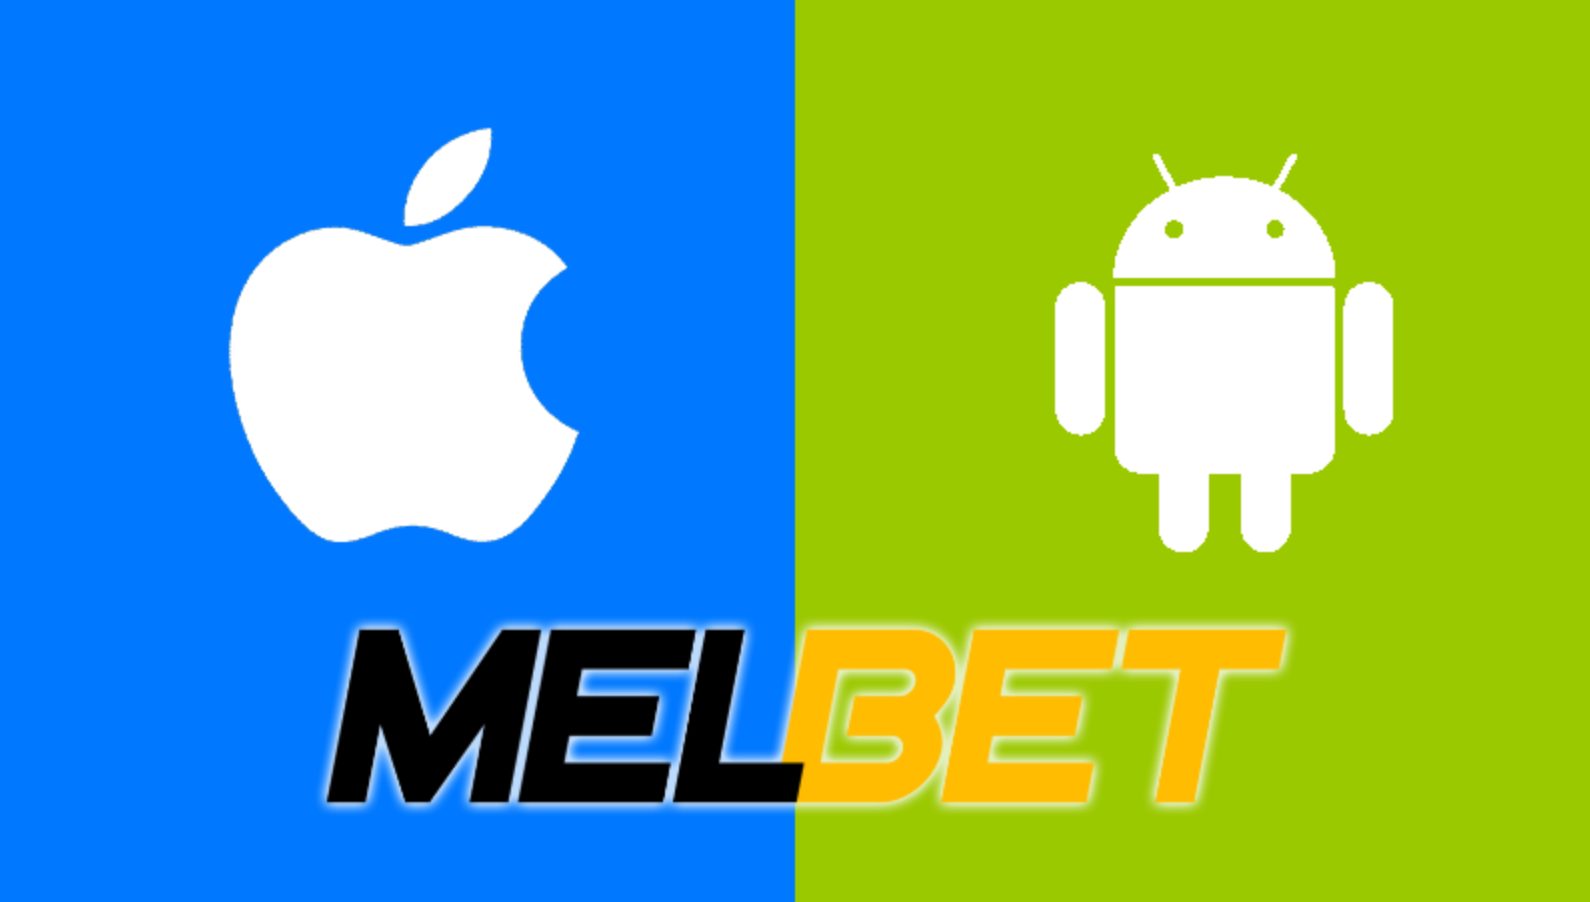 télécharger l'application Melbet mobile sur une plateforme Android